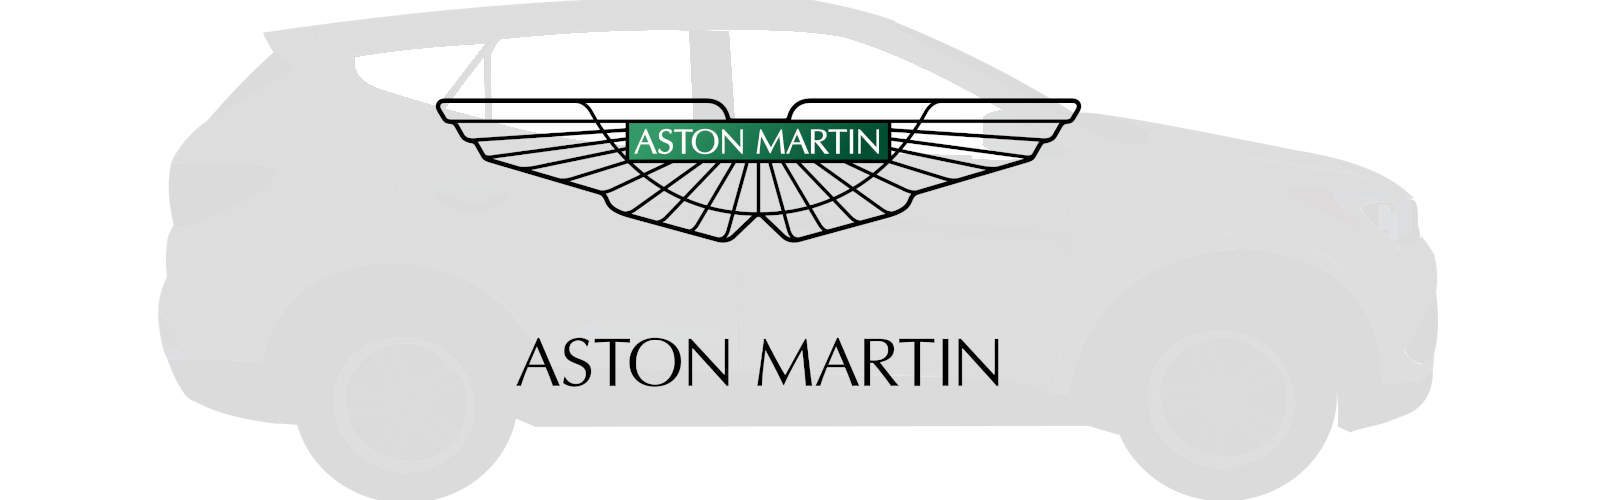 Aston Martin SUV Modelle